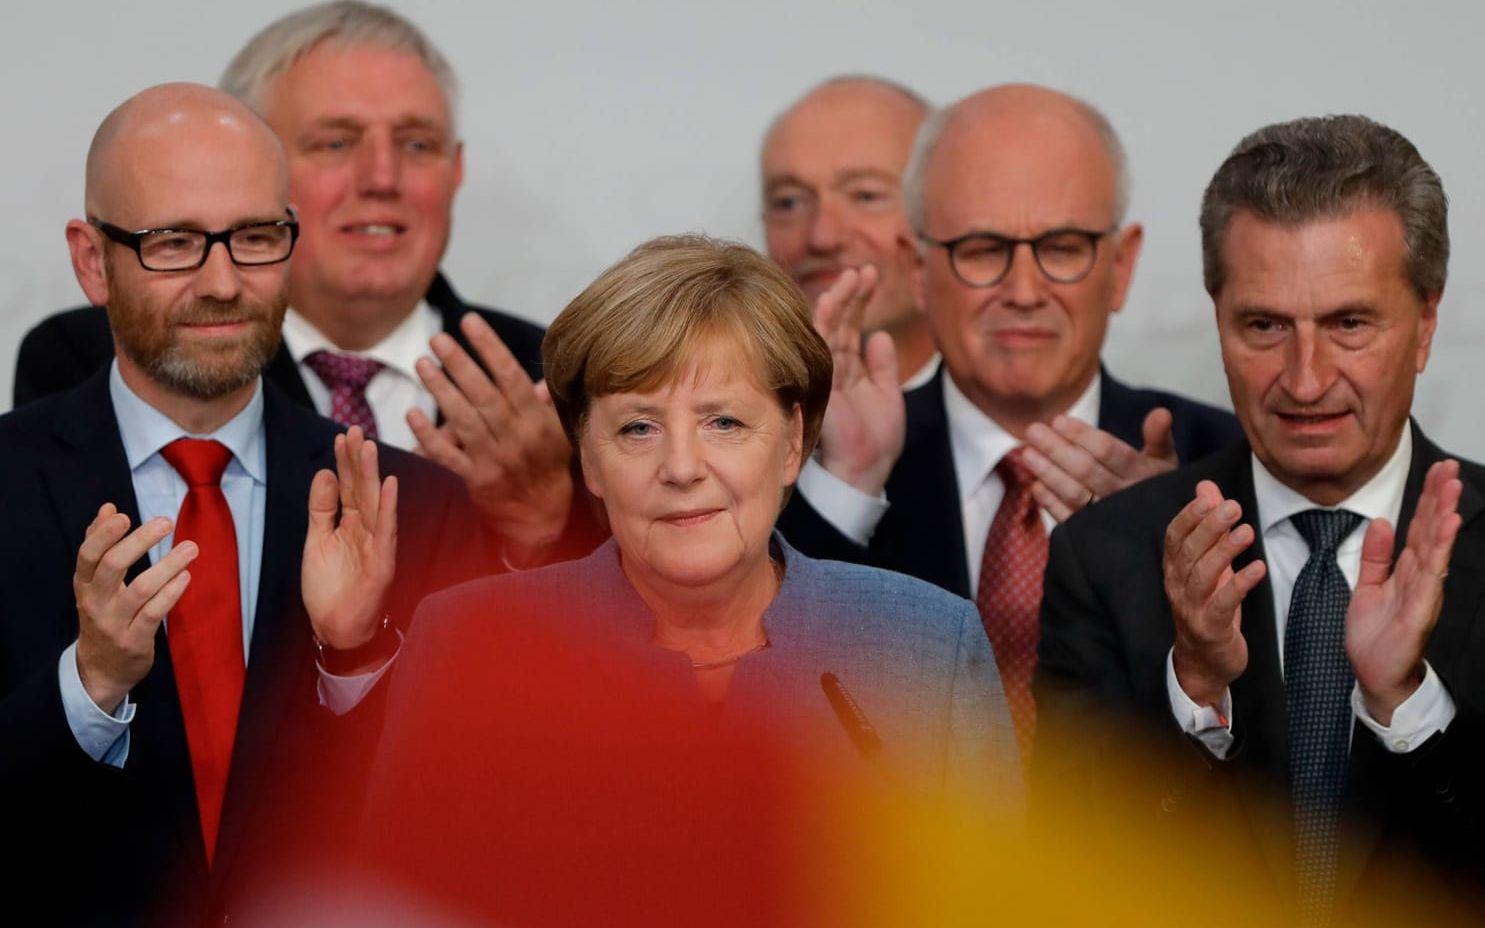 Merkel beklagade AfD:s framgång under talet i Berlin och lovade att hennes parti ska vinna tillbaka väljarna som gått till AfD. Bild: TT